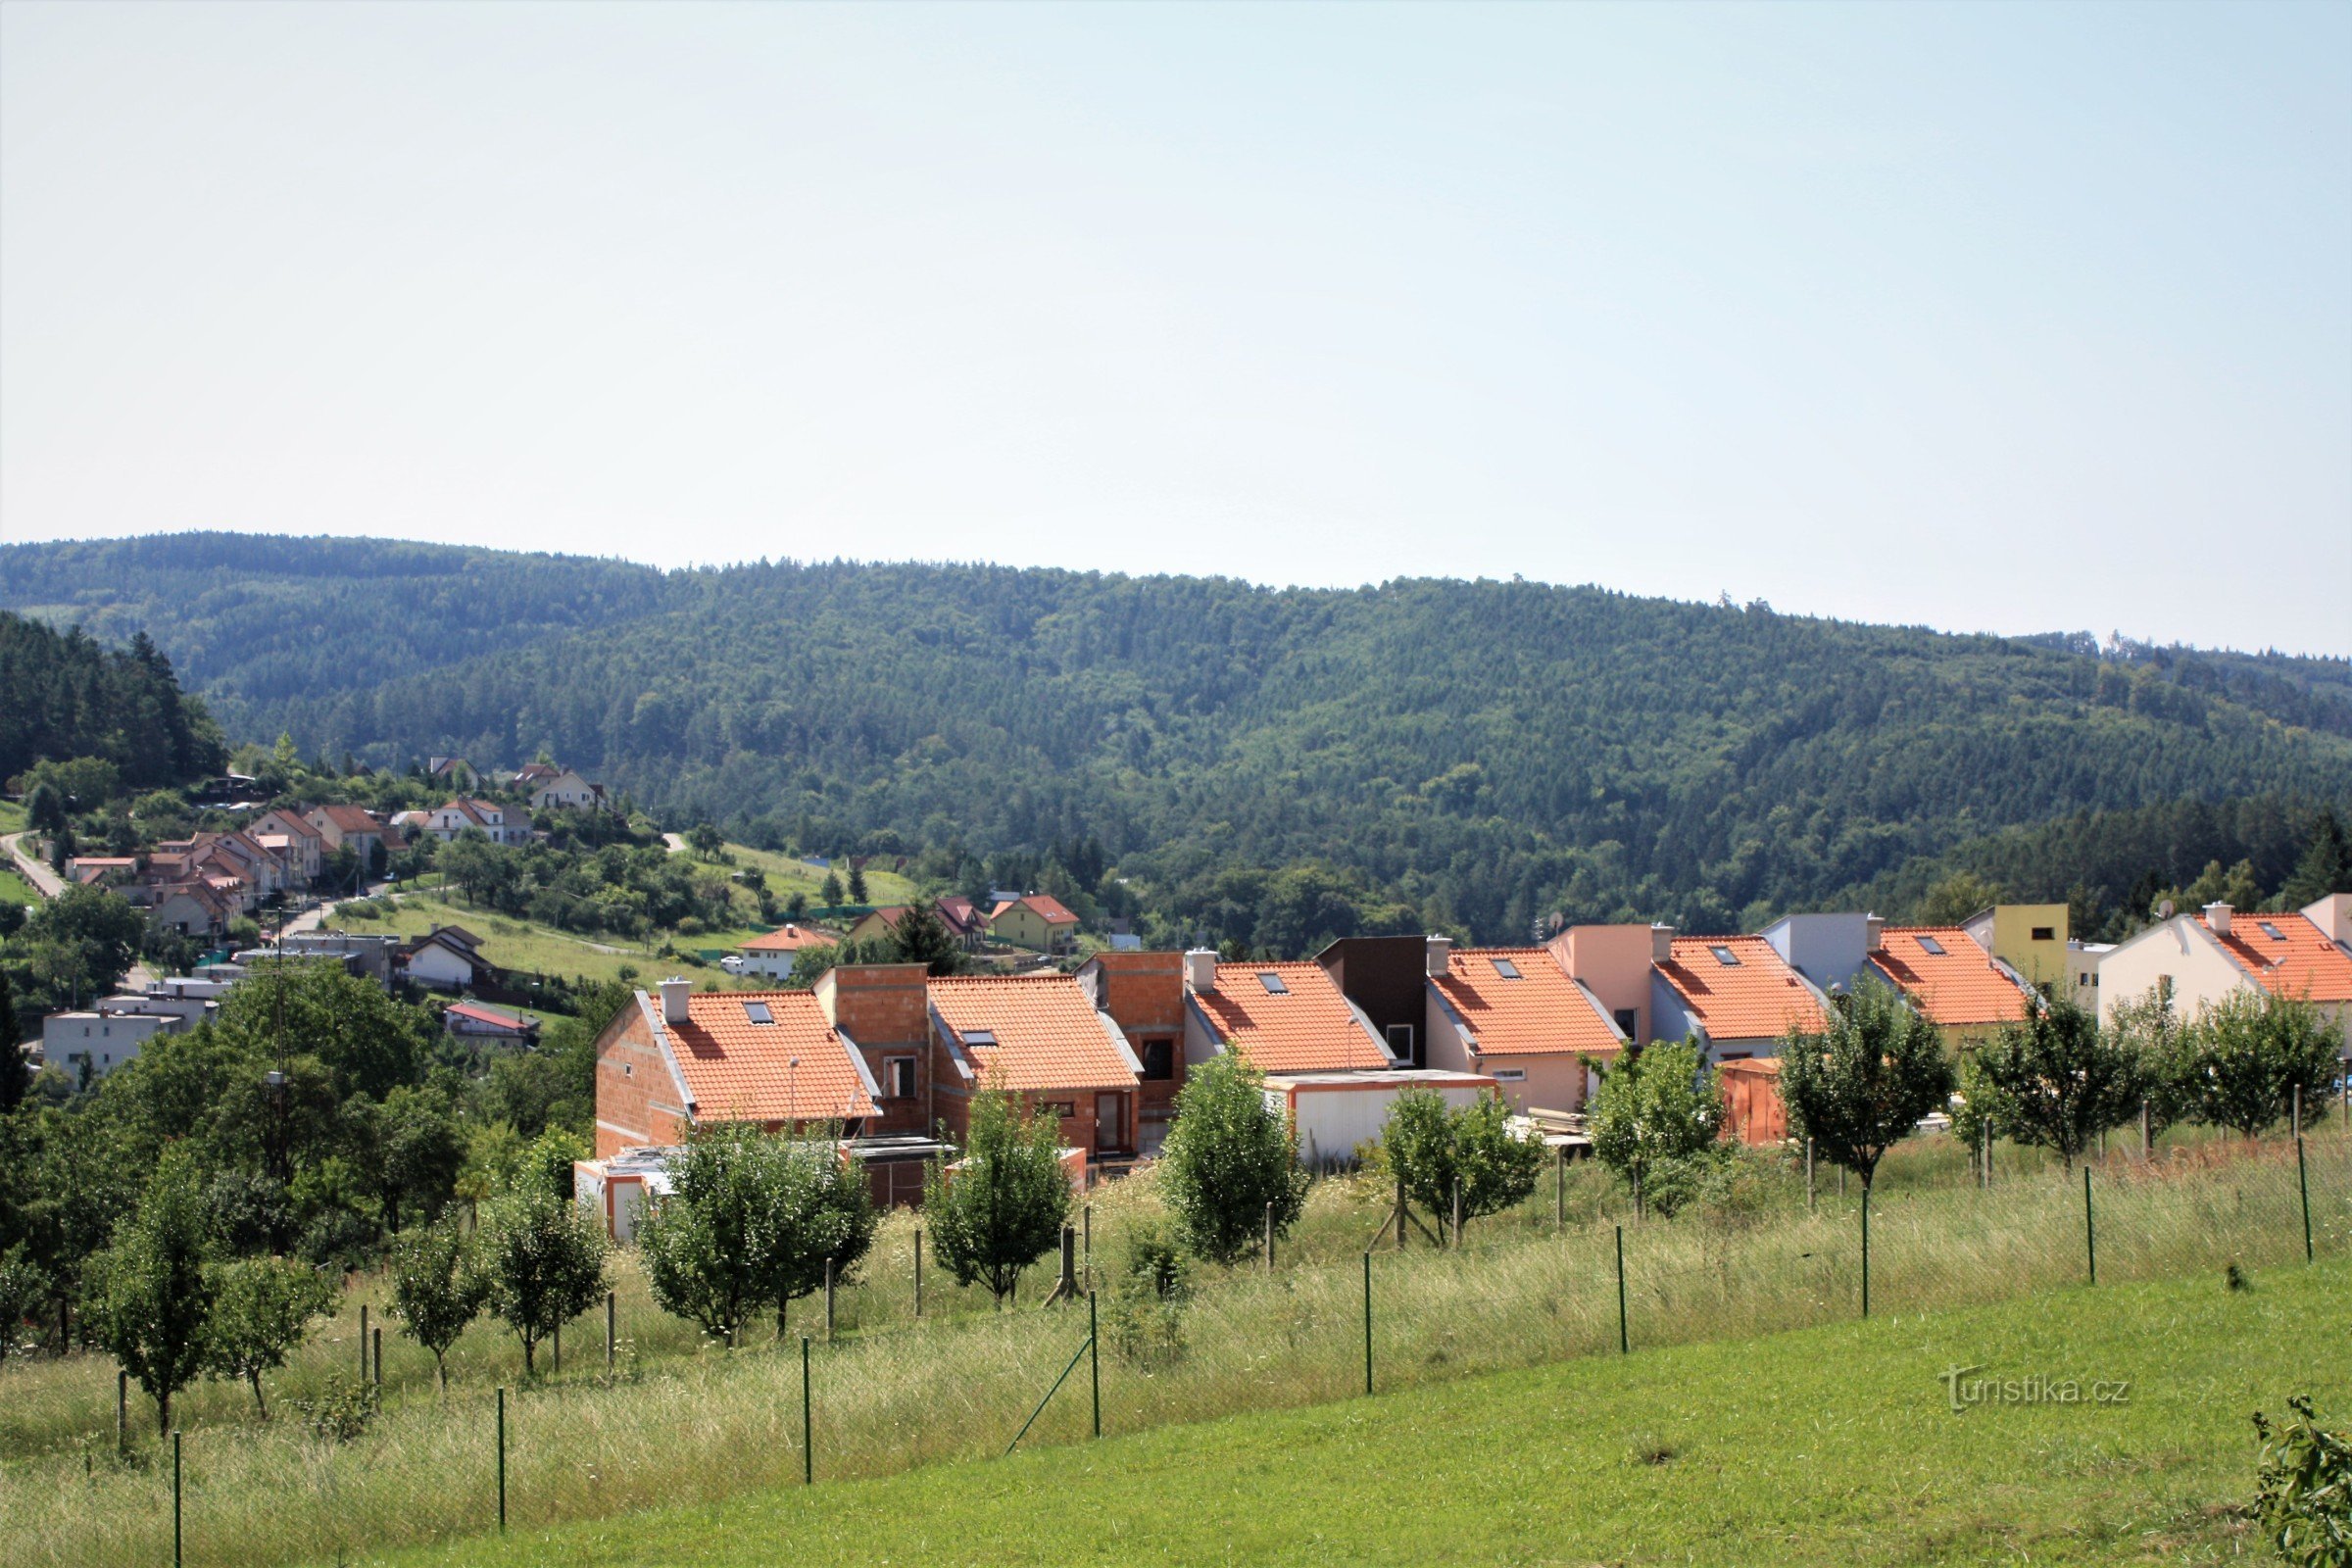 Pogled preko novih kuća u Kanicama do ušća Kanické potoka u Časnýru